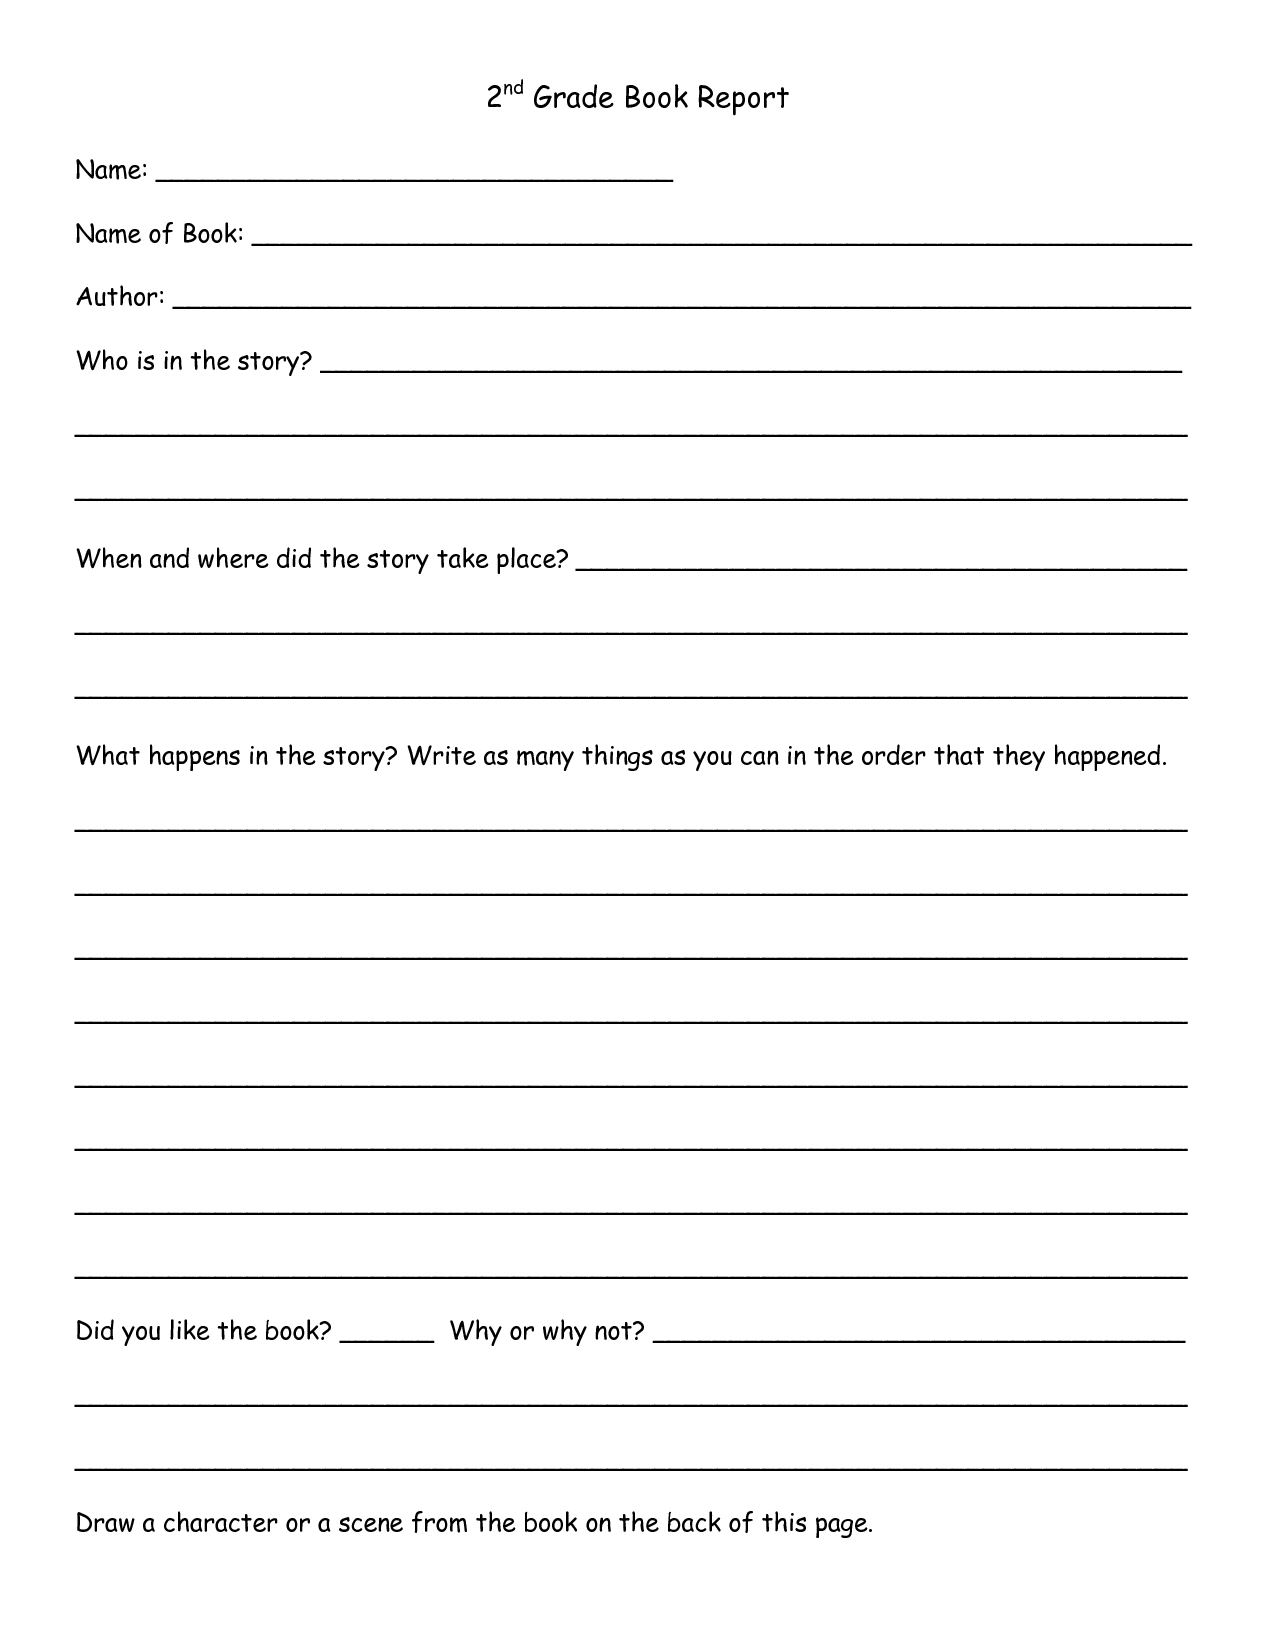 2Nd Grade Book Report Template | 2Nd Grade Book Report – Pdf Intended For 2Nd Grade Book Report Template